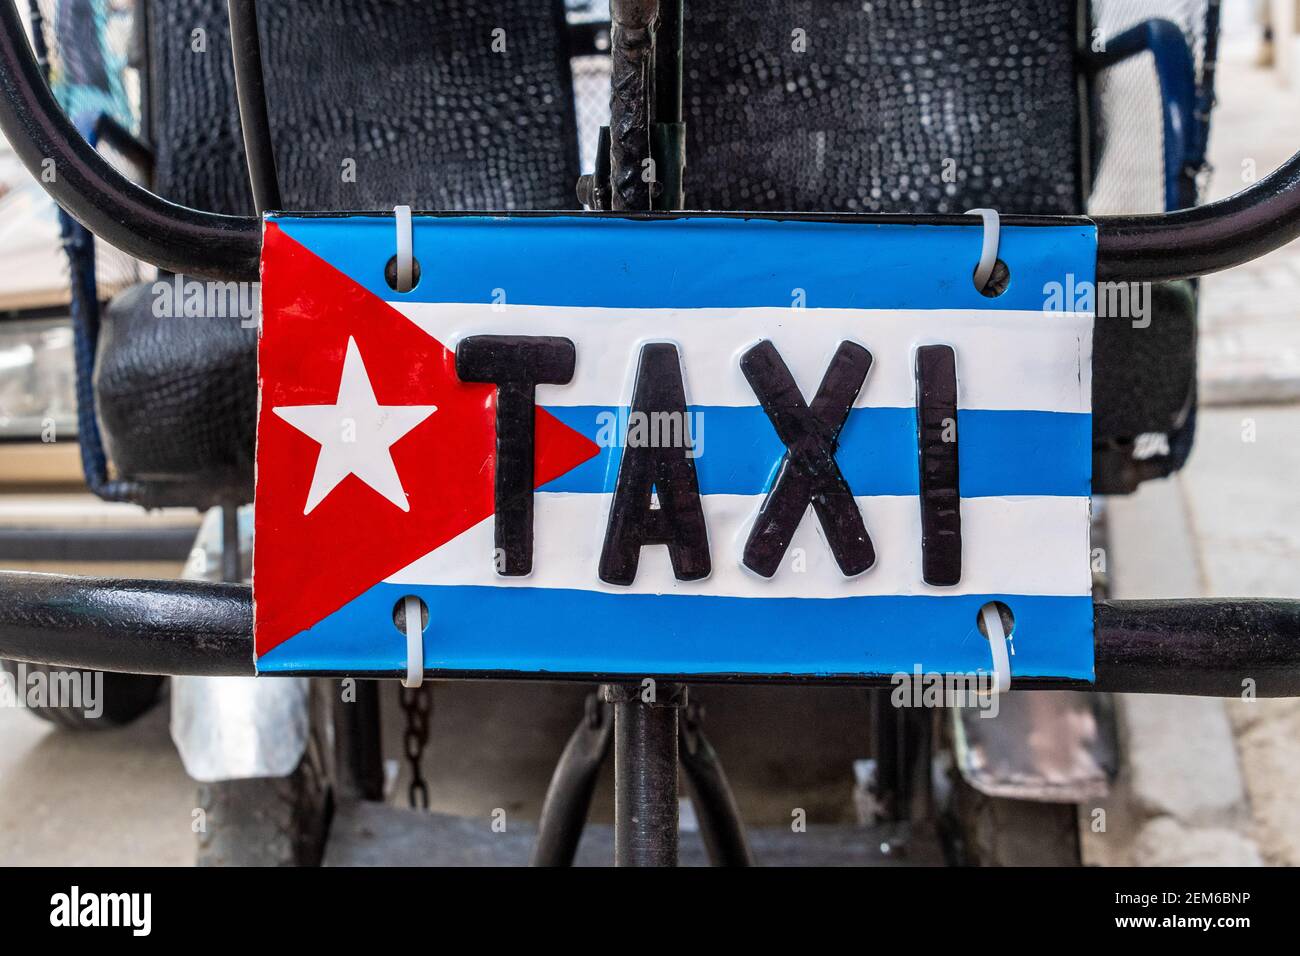 TAXI sign over a Cuban flag, Old Havana, Cuba Stock Photo